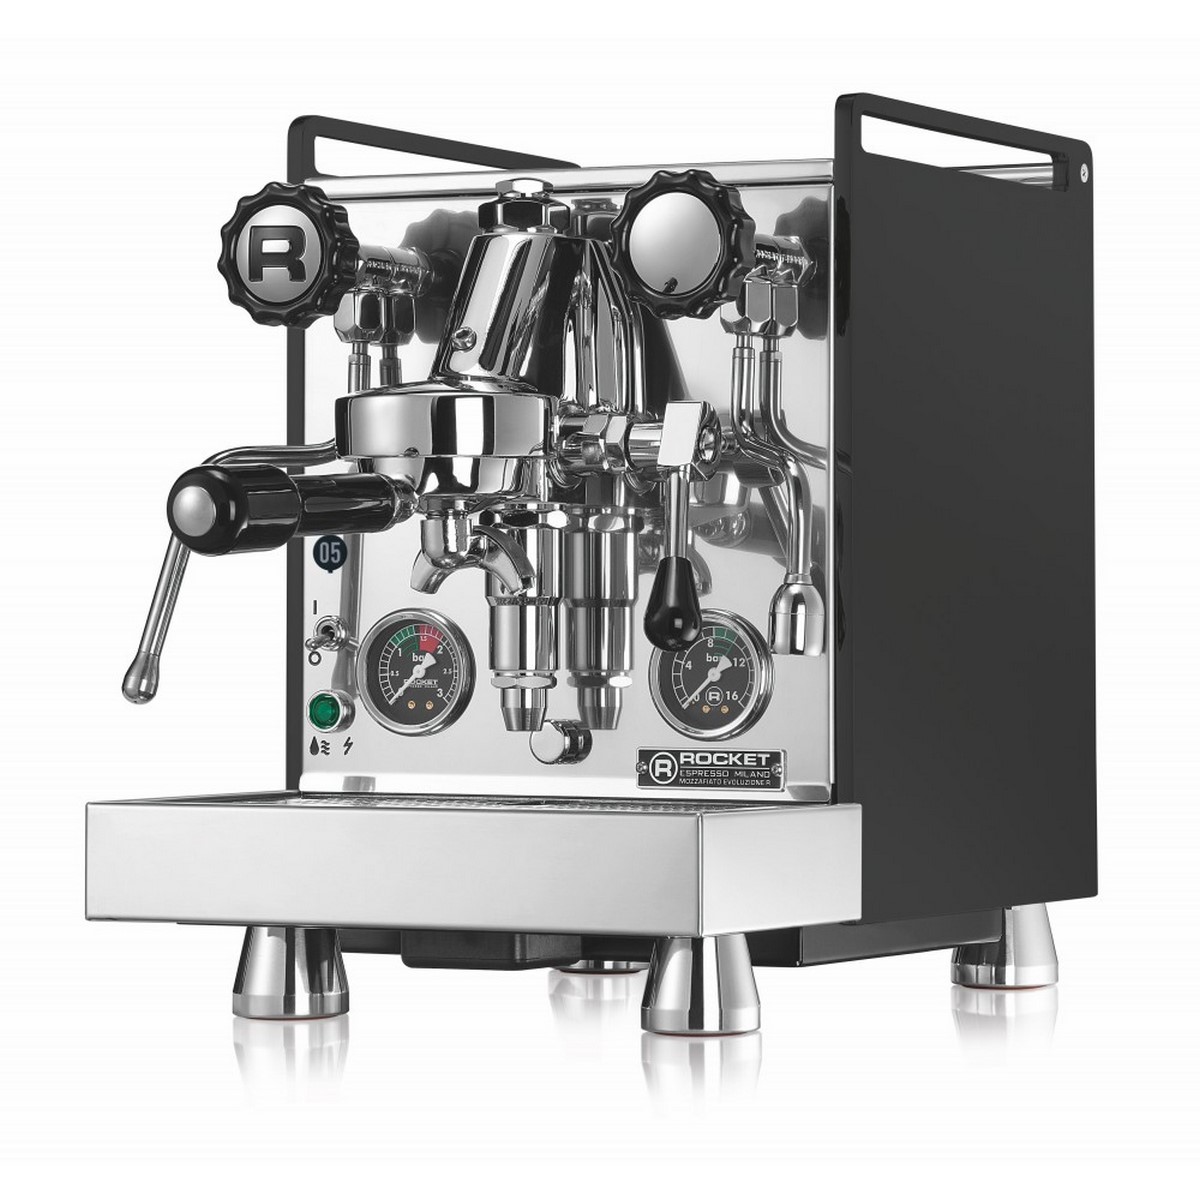 Acquista online Coffee machine Rocket Espresso MOZZAFIATO CRONOMETRO R Black